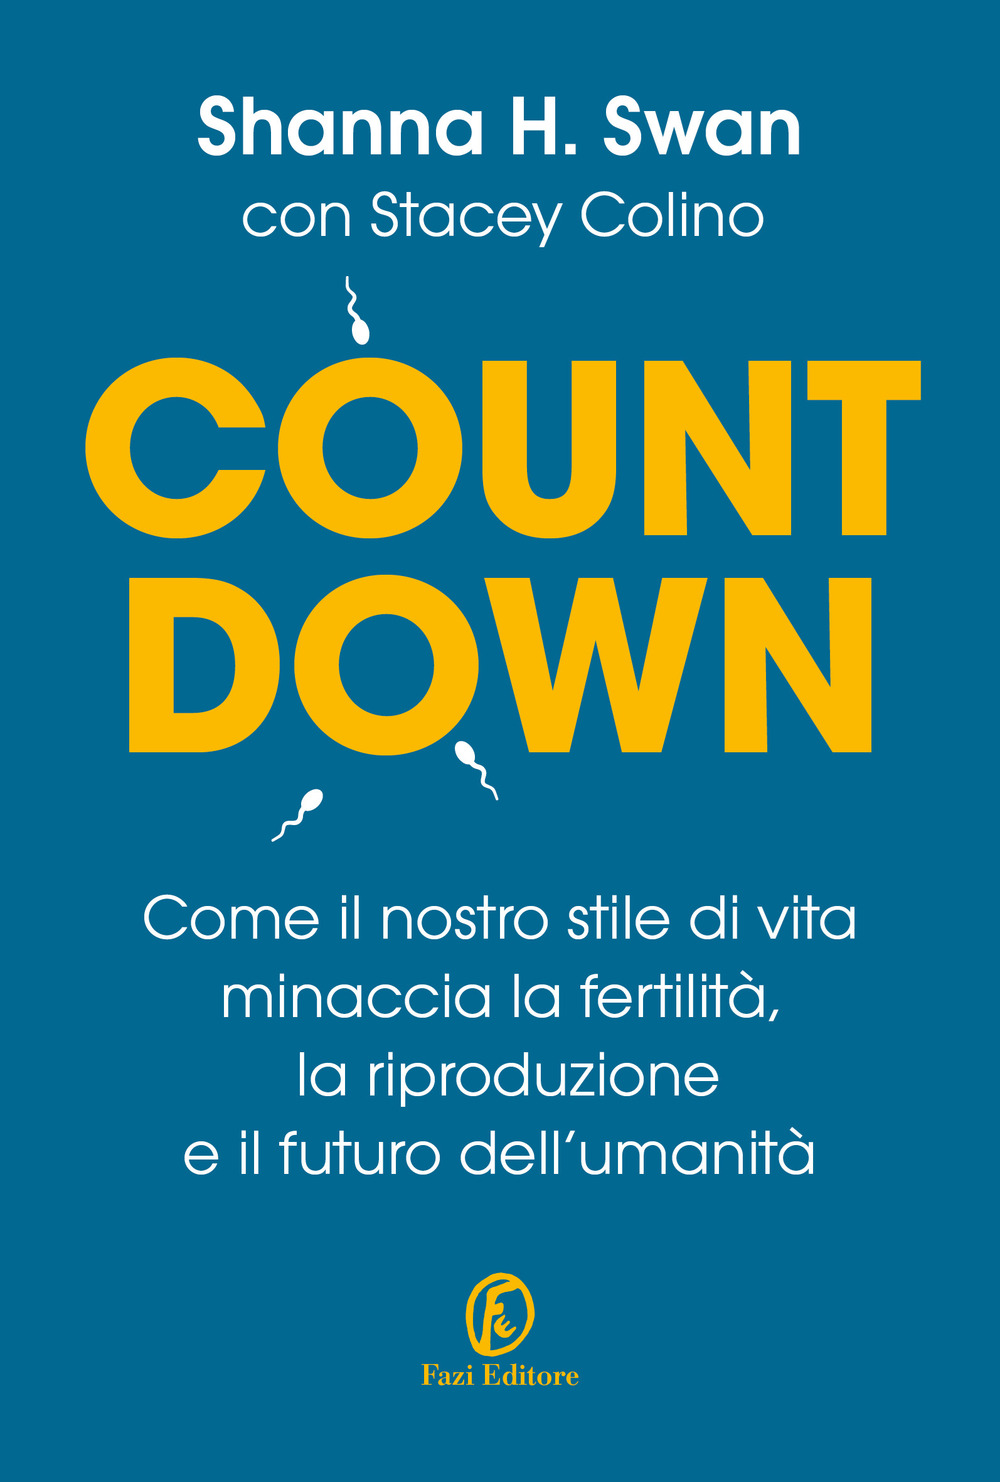 Countdown. Come il nostro stile di vita minaccia la fertilità, la riproduzione e il futuro dell'umanità - Shanna H. Swan - Fazi